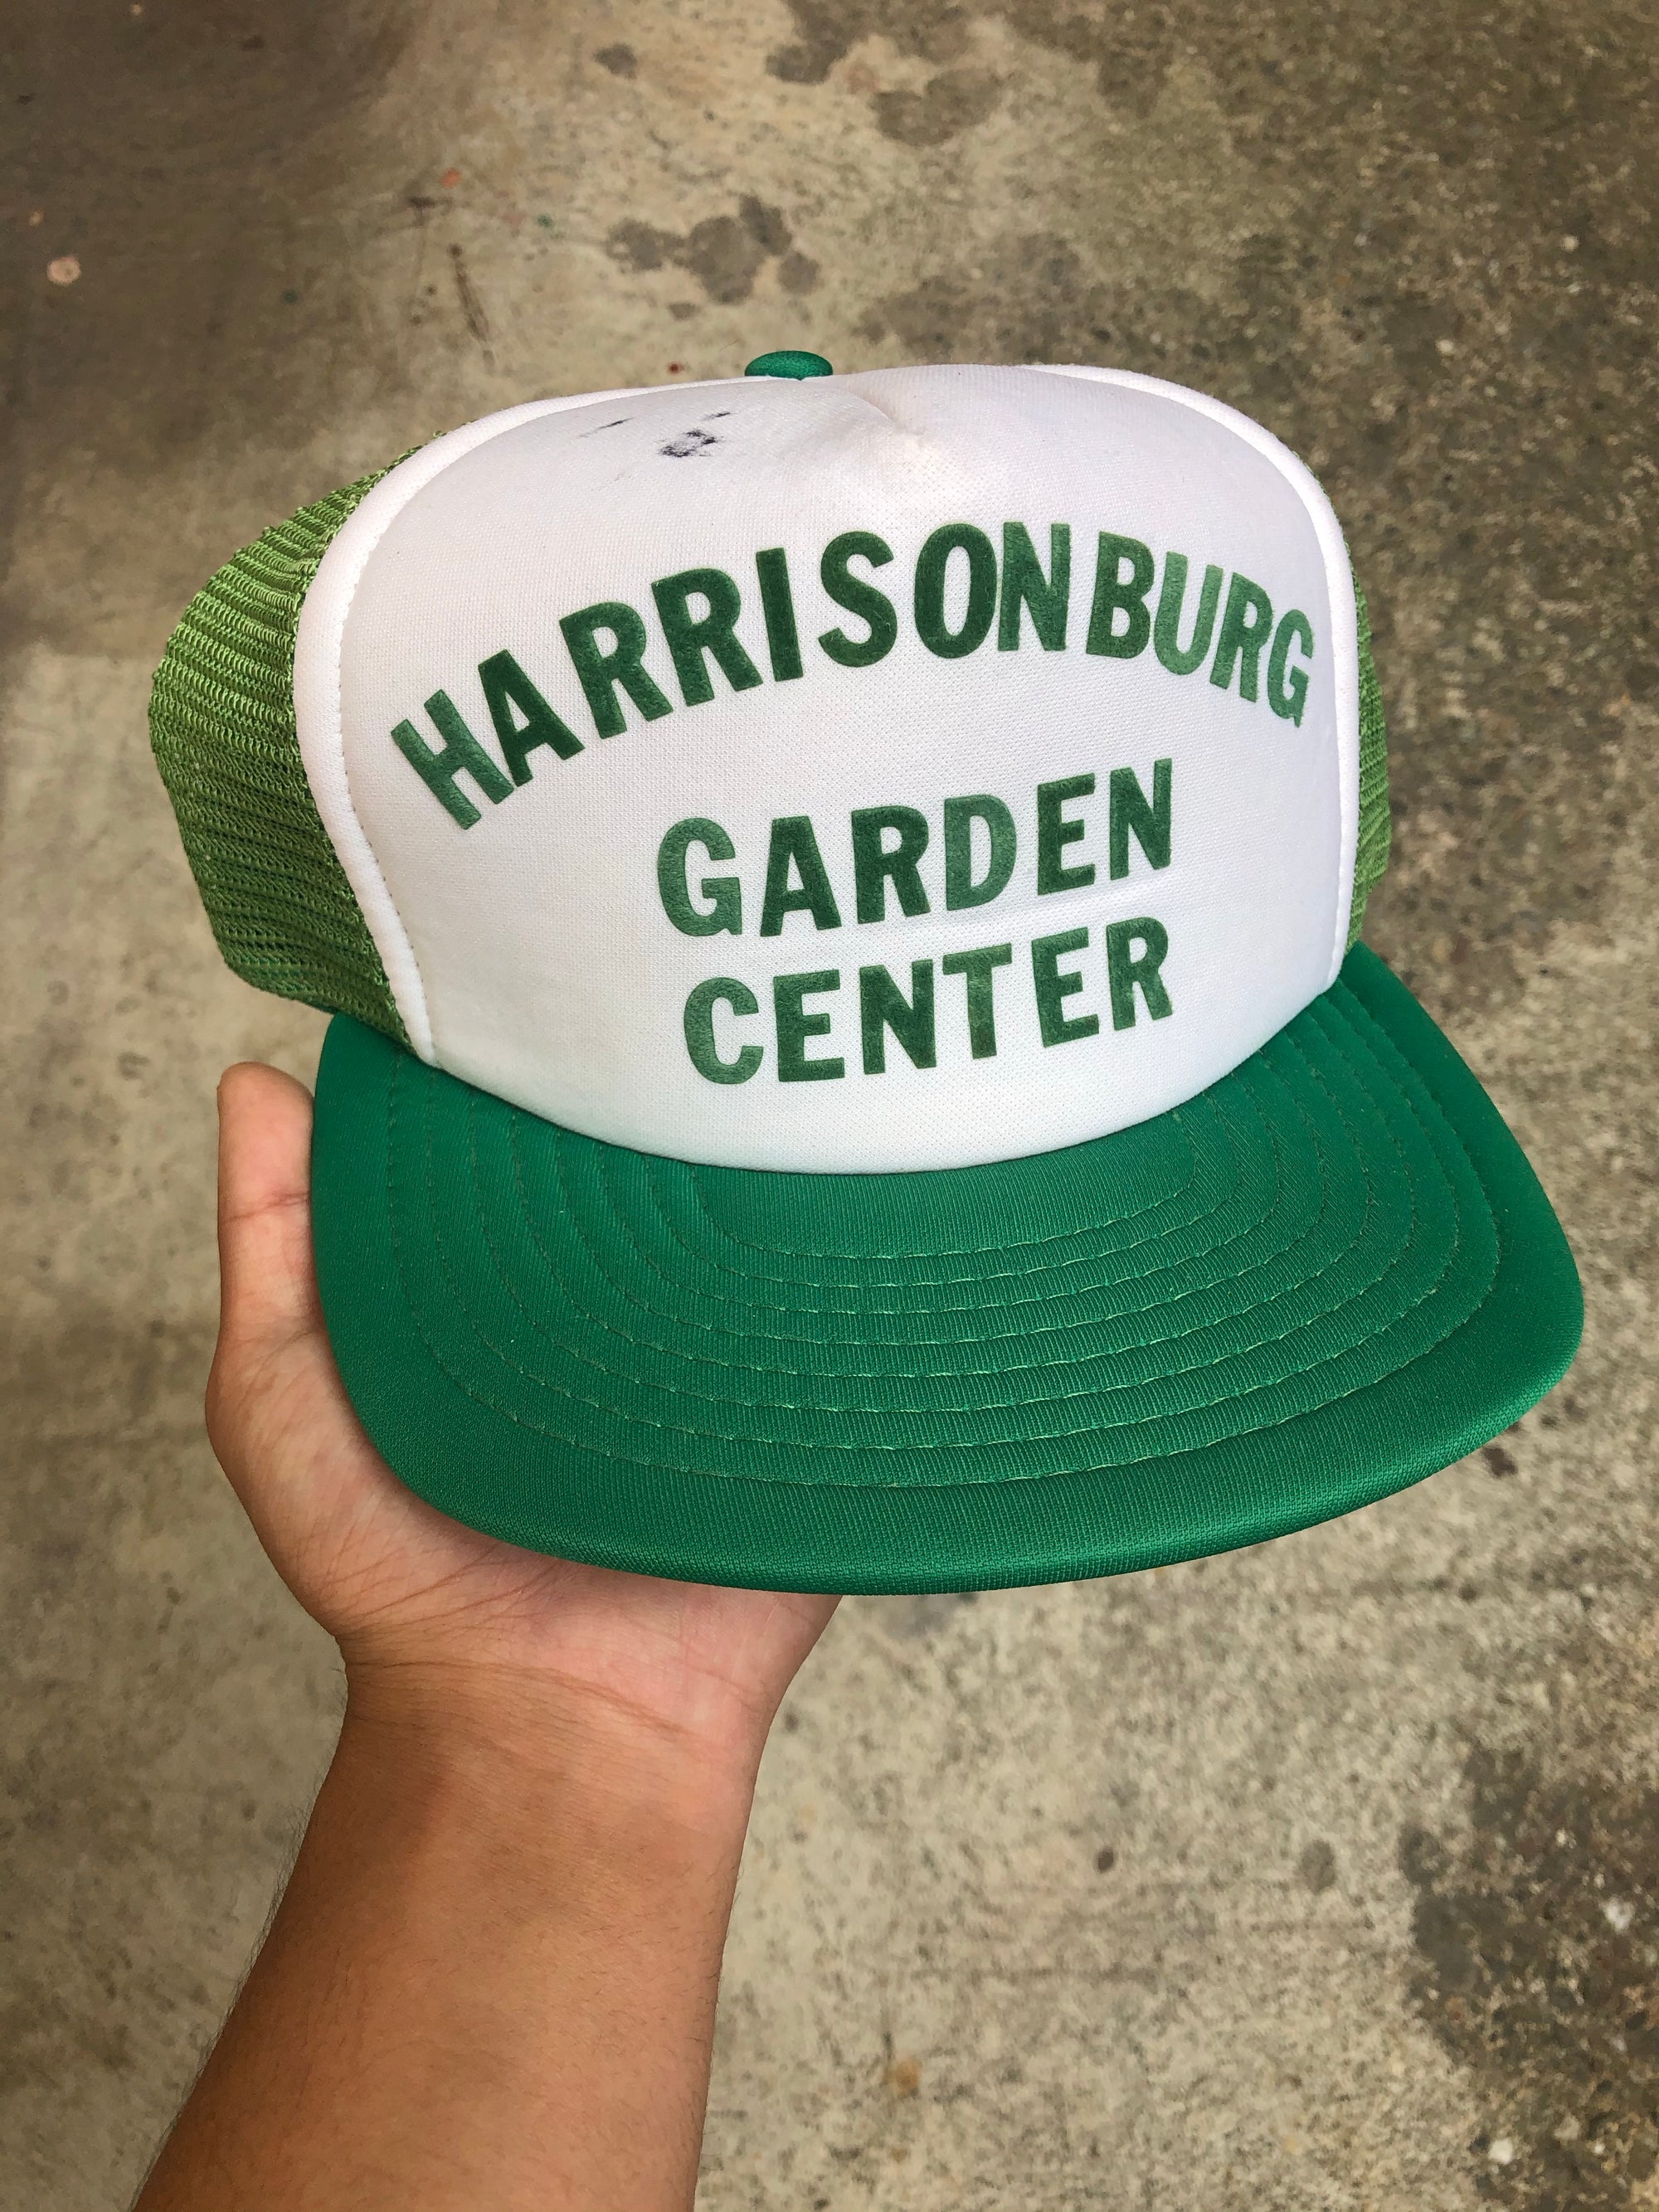 1990s “Harrisonburg Garden Center” Hat